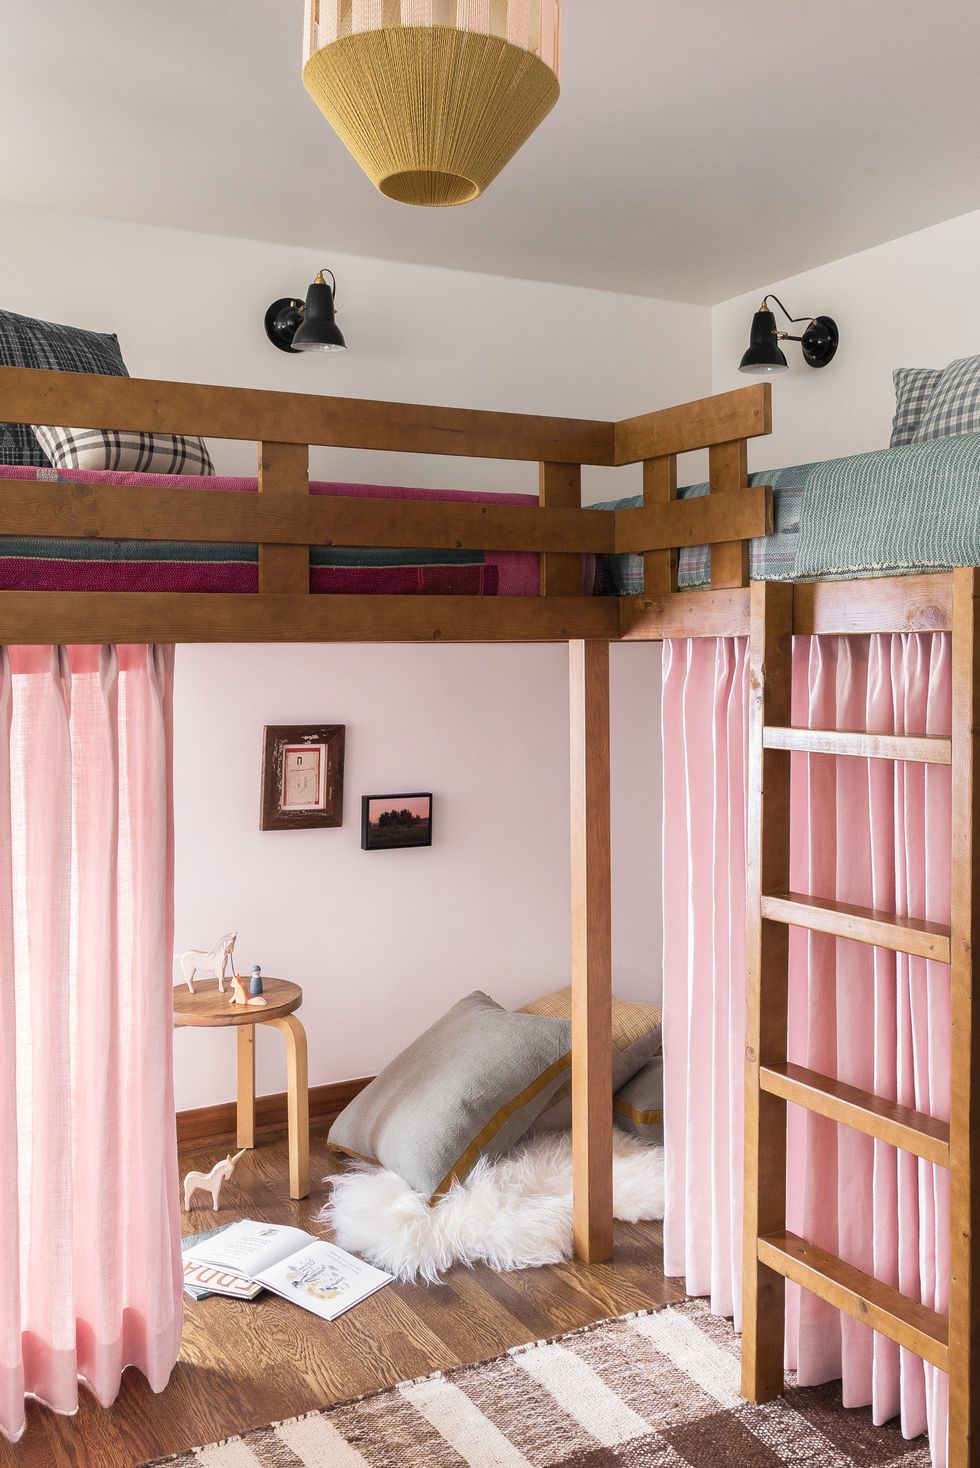 Trong phòng ngủ do Heidi Callier thiết kế này , rèm cửa màu hồng phấn làm nhẹ tâm trạng và tạo ra một khu vui chơi riêng biệt dưới các giường tầng trên cùng. Màu nâu ấm áp và gỗ tạo ra một nền tảng ấm áp, và mặc dù mỗi thiết bị cảm thấy thân thiện với trẻ em, nhưng nó cũng hòa hợp với phong cách của ngôi nhà nói chung.